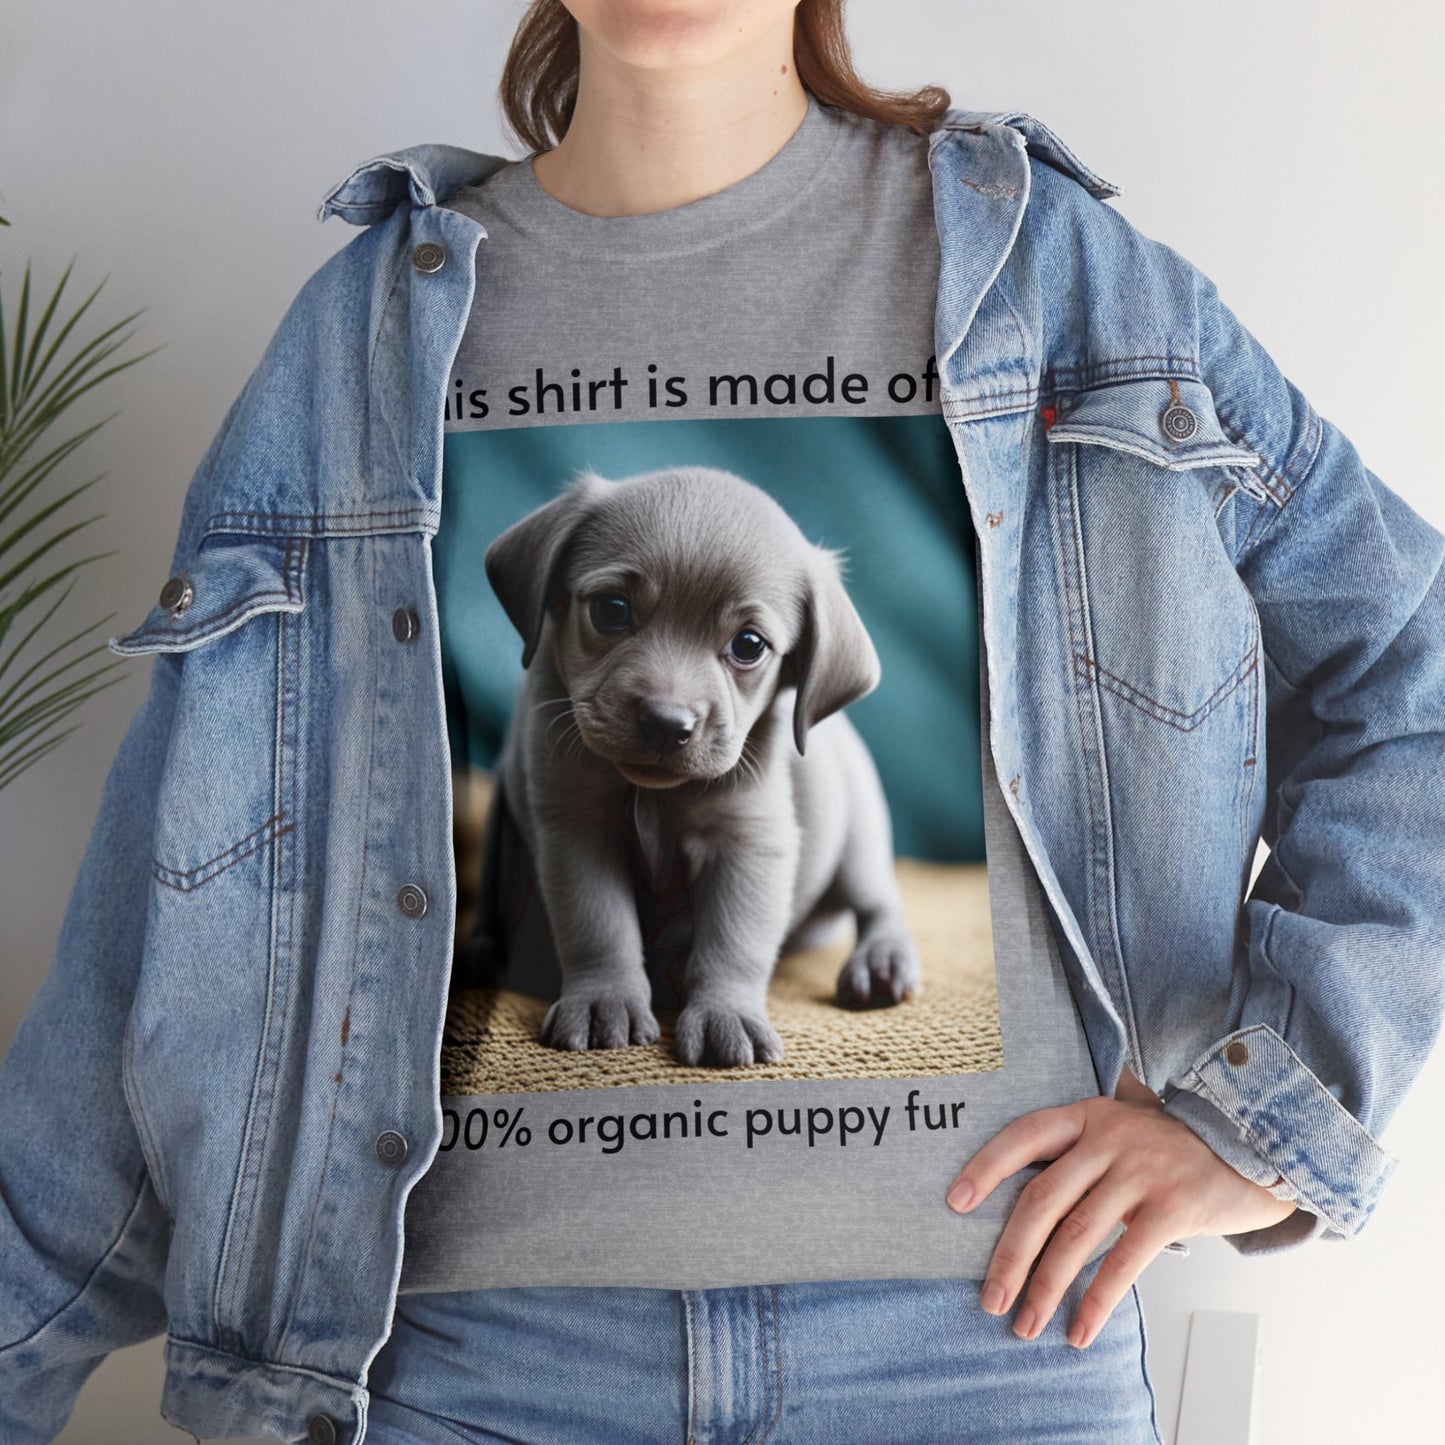 Puppy Fur Shirt